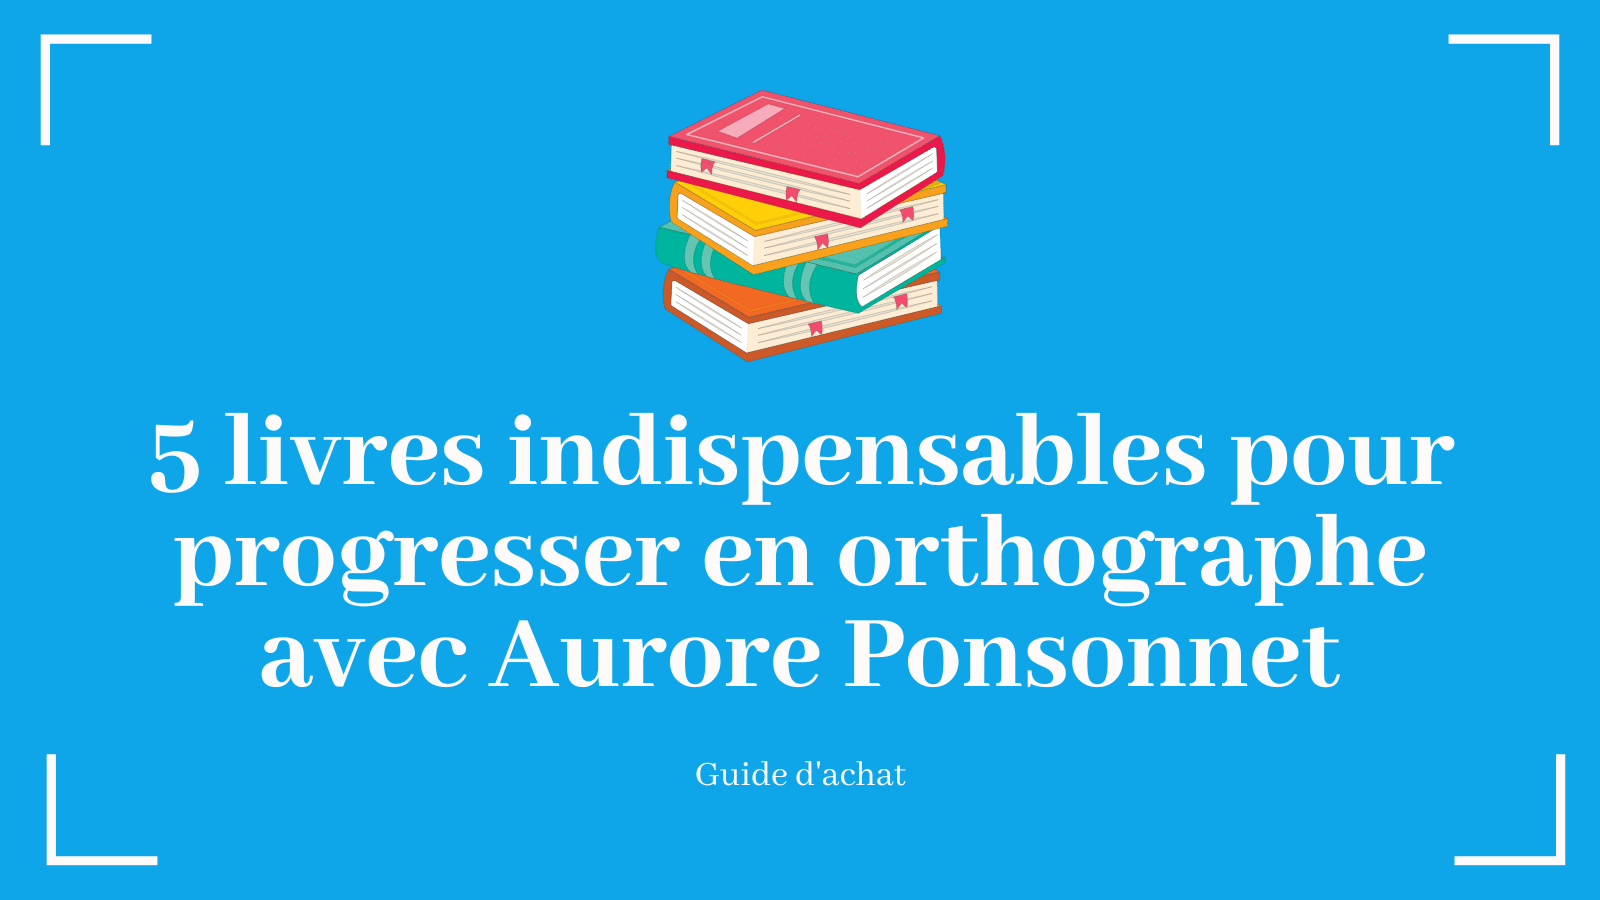 5 livres indispensables pour progresser en orthographe avec Aurore Ponsonnet